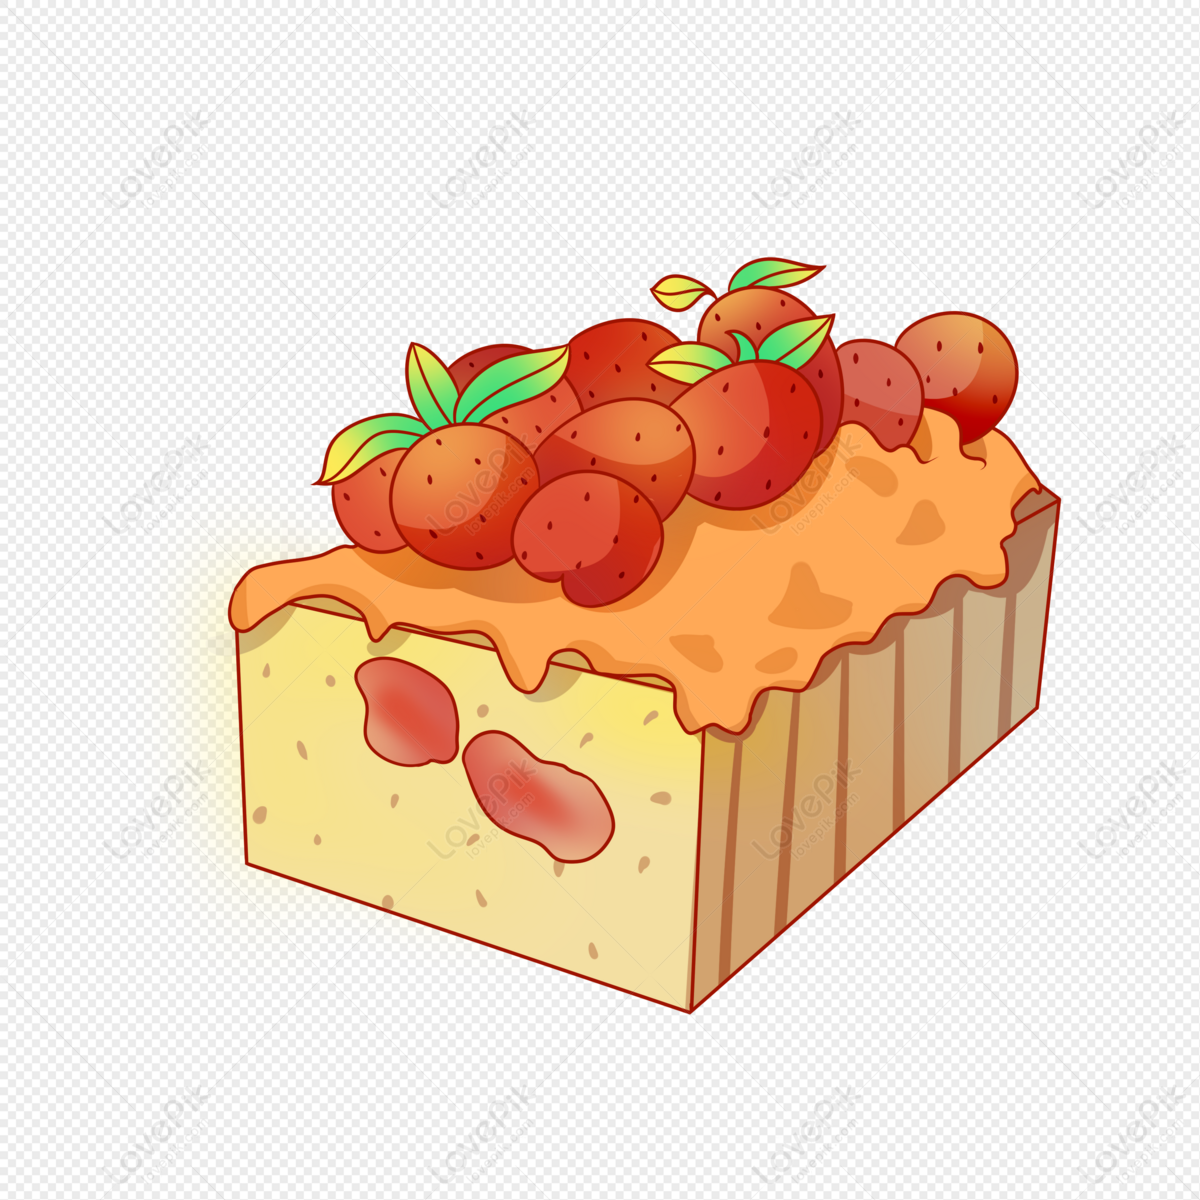 Hình vẽ bánh ngọt cute này sẽ khiến bất kỳ ai cũng phải mê mẩn ngay từ cái nhìn đầu tiên. Với những chi tiết nhỏ xinh xắn, không gian của bạn sẽ tràn đầy sắc màu và niềm vui khi nhìn thấy bánh ngọt dễ thương này.